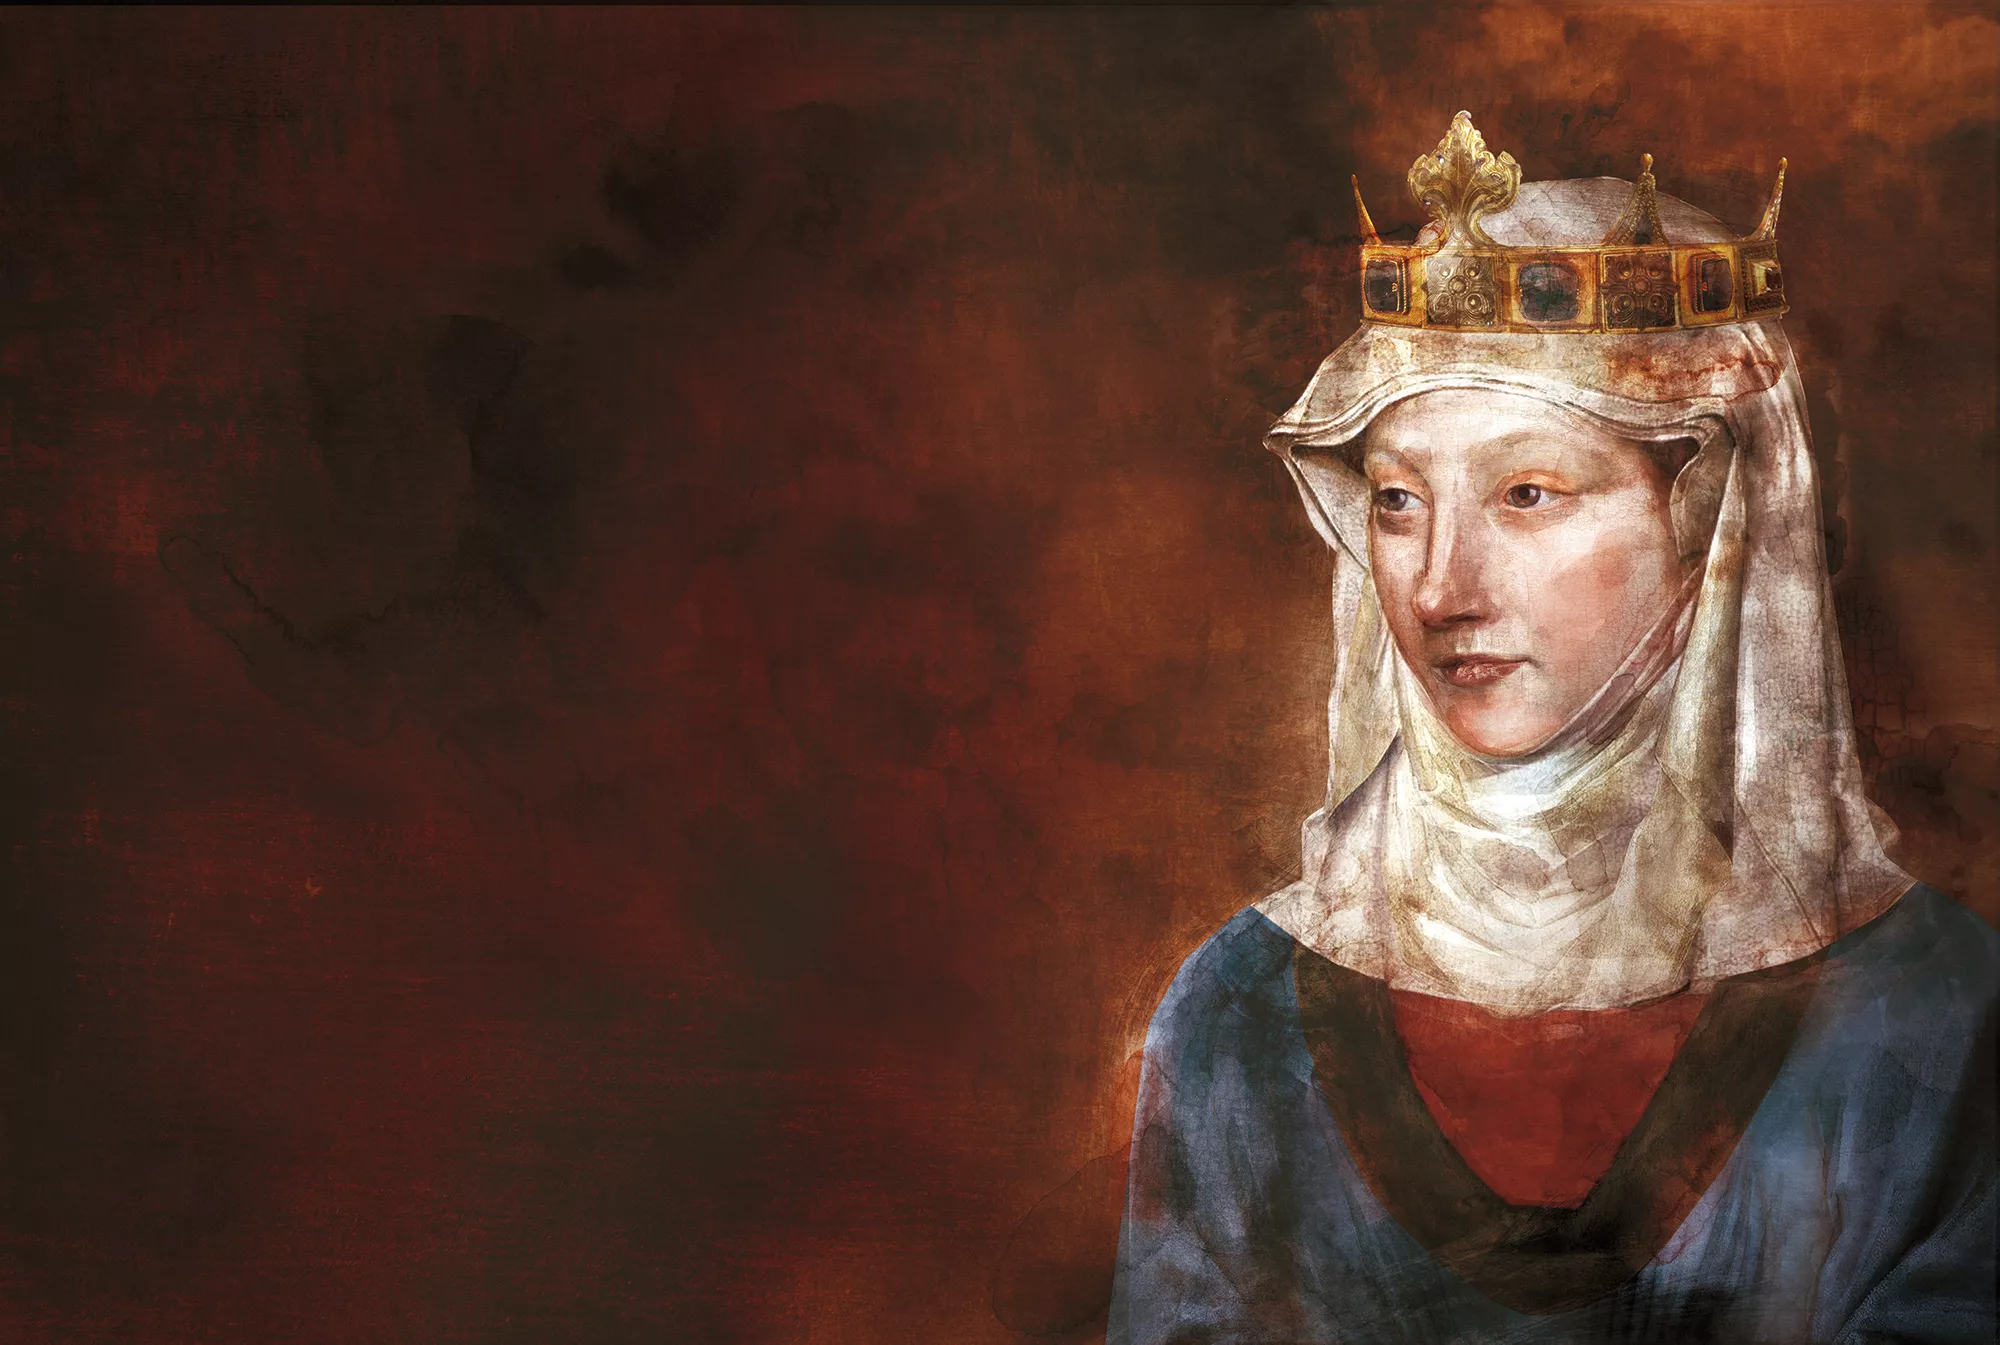 La reina era devota de l’orde del Cister. Per això en aquest retrat fet especialment per a ‘Sàpiens’ se la representa tal com les fonts històriques assenyalen que anava vestida.